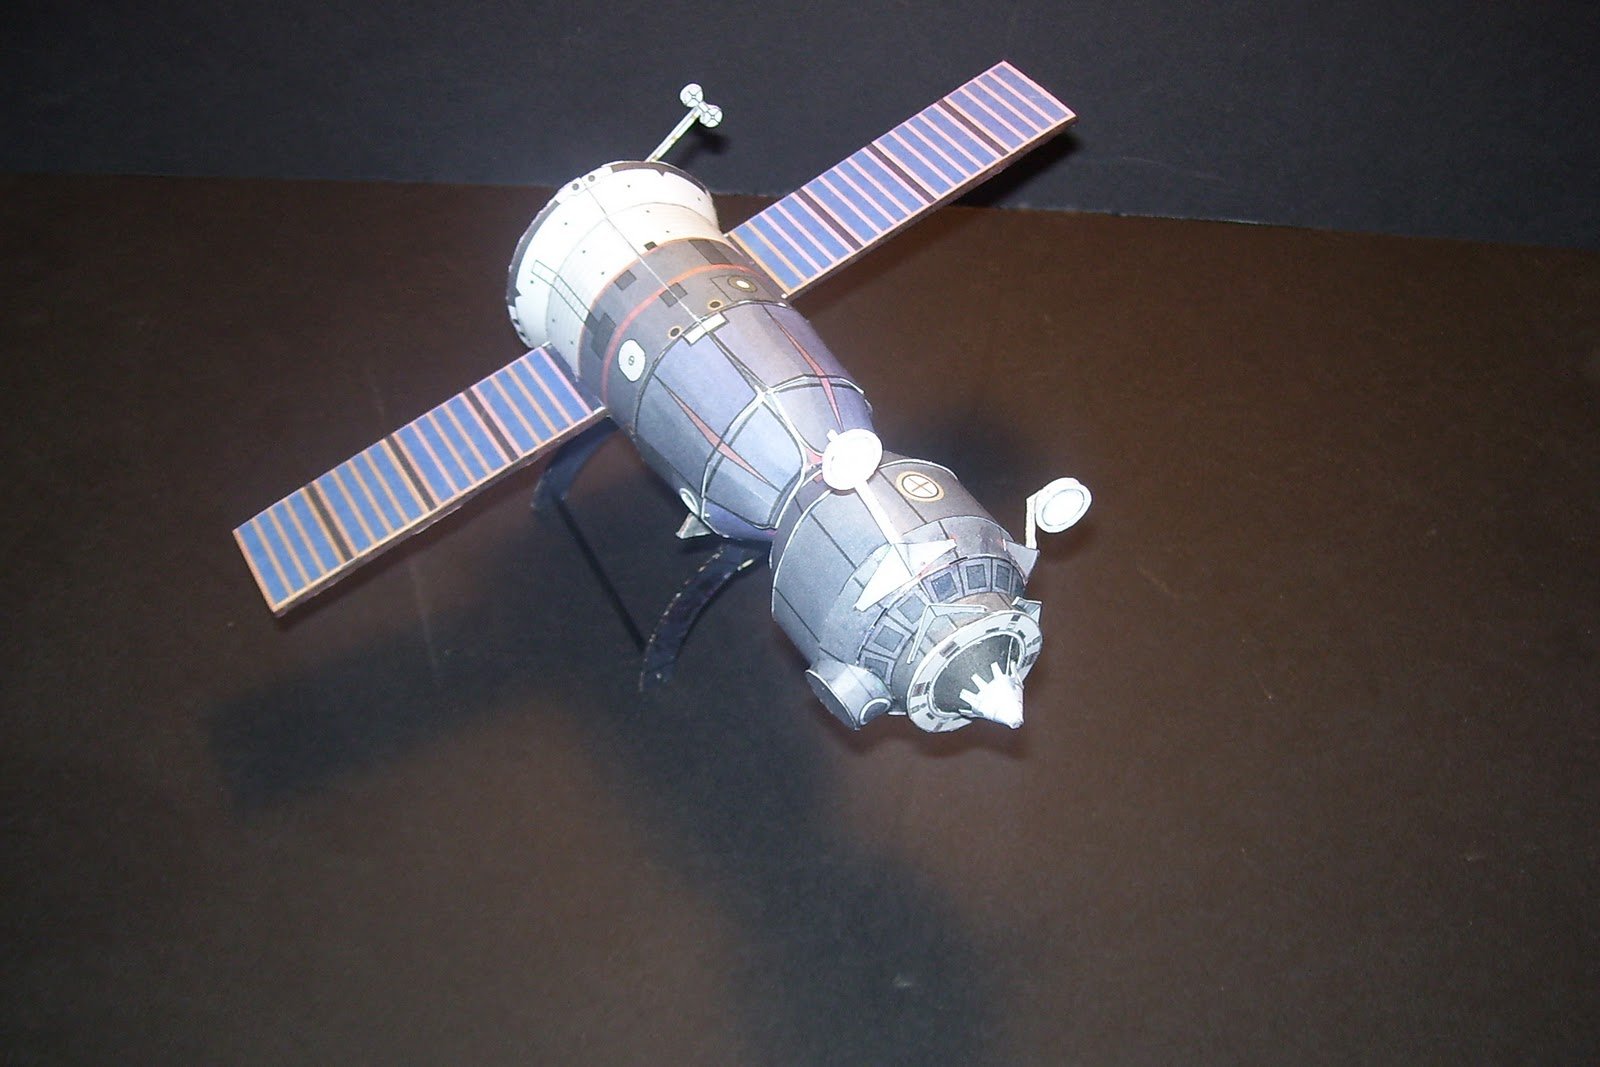 Модели космических спутников Луна-1 и Луна-3